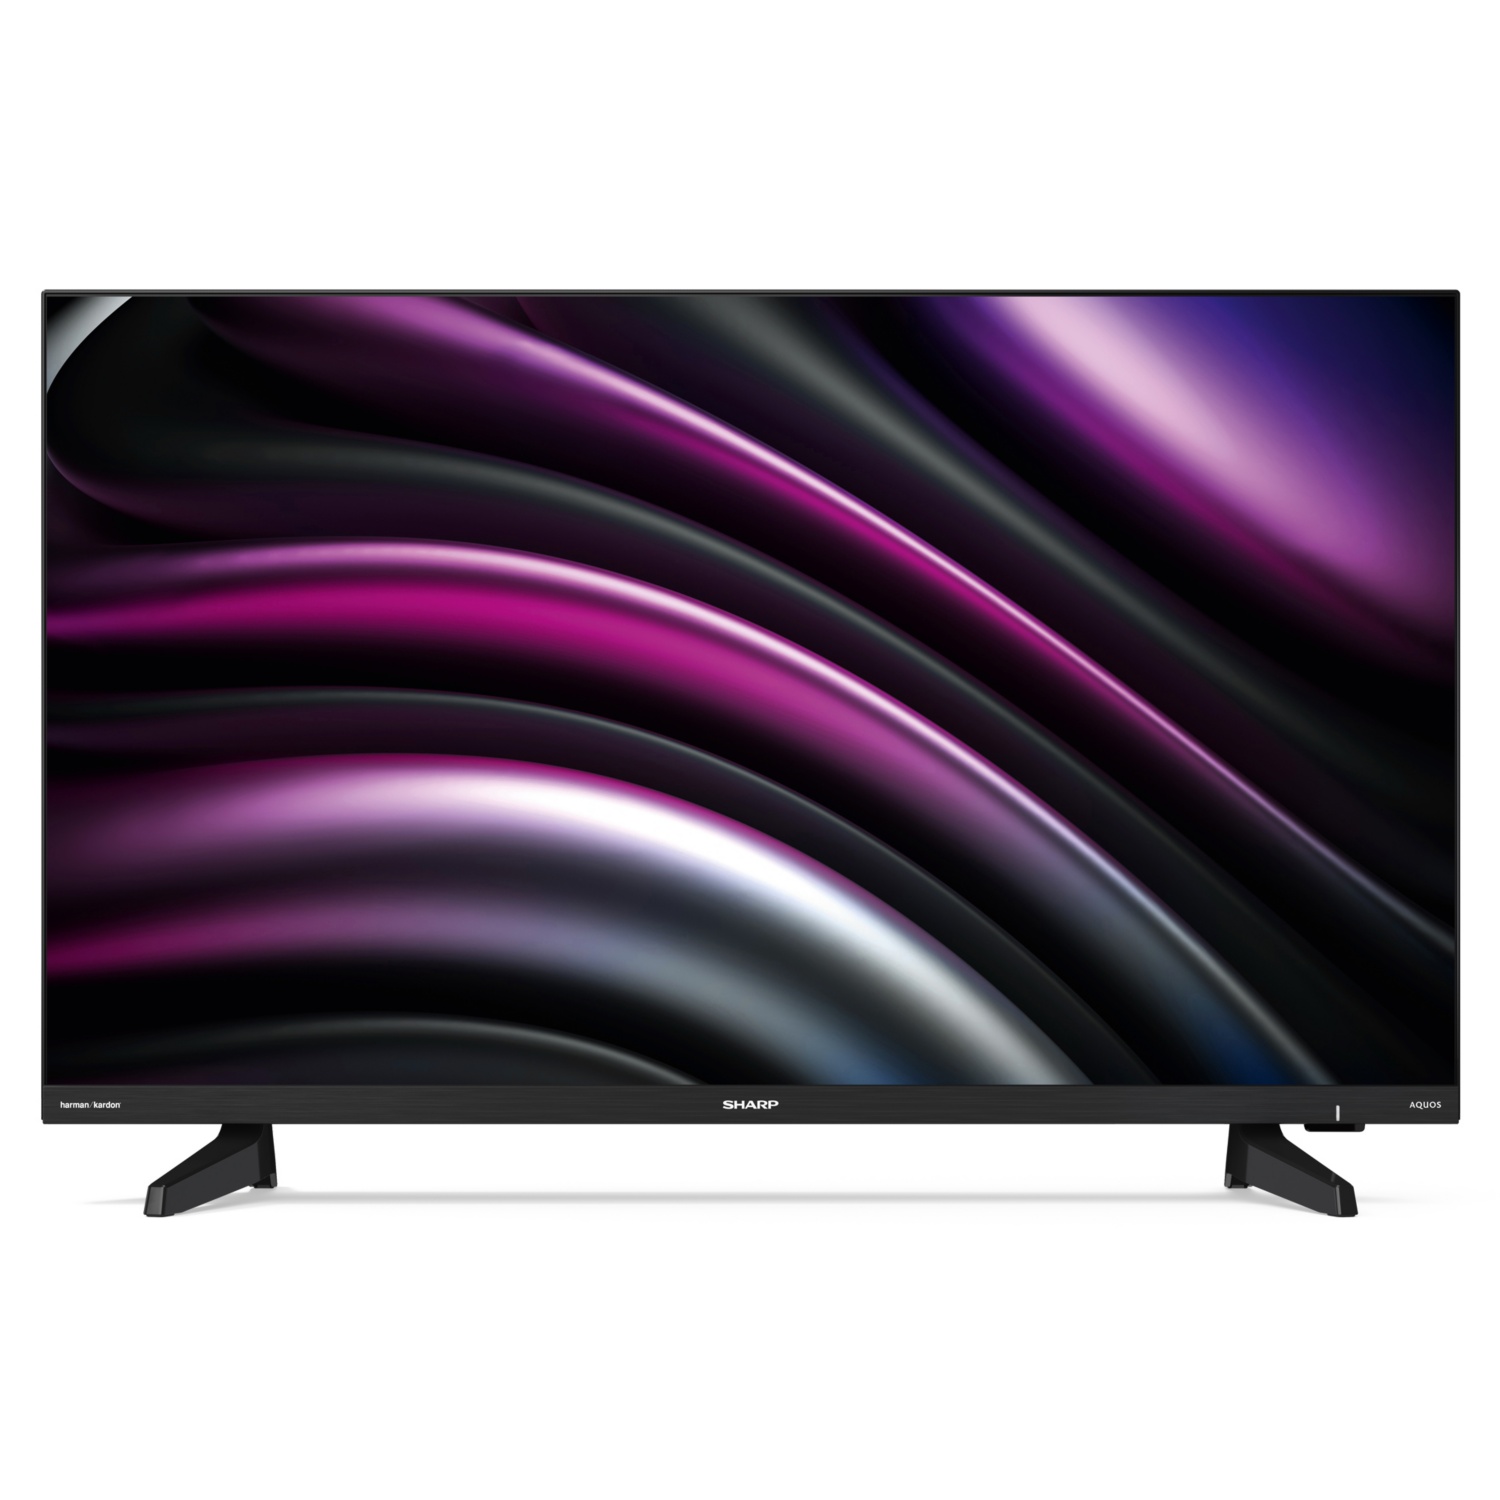 SHARP TV HD LED 81 cm (32”) DB2E